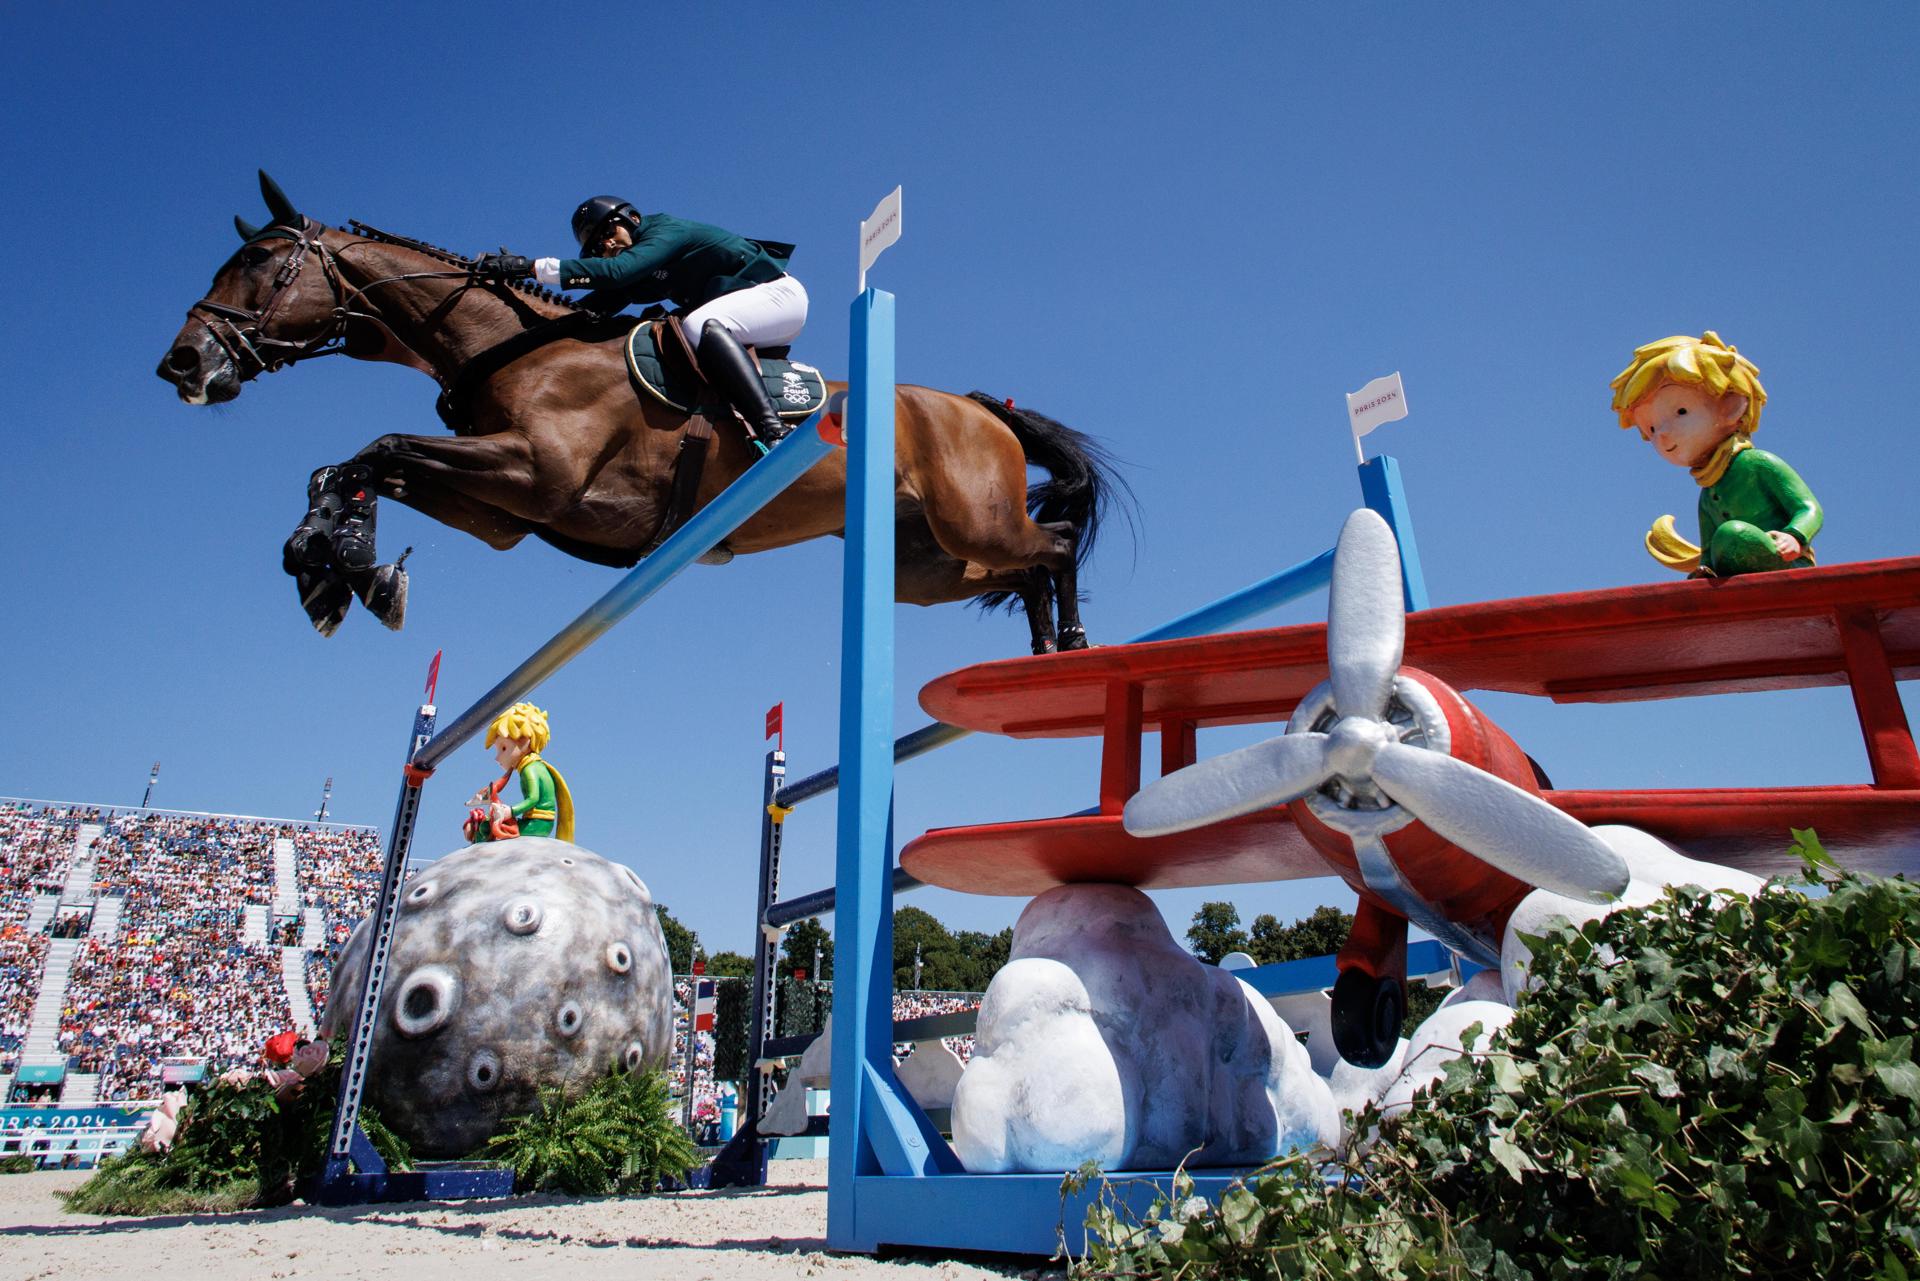 Els salts d'obstacles són una de les proves d'hípica dels jocs olímpics